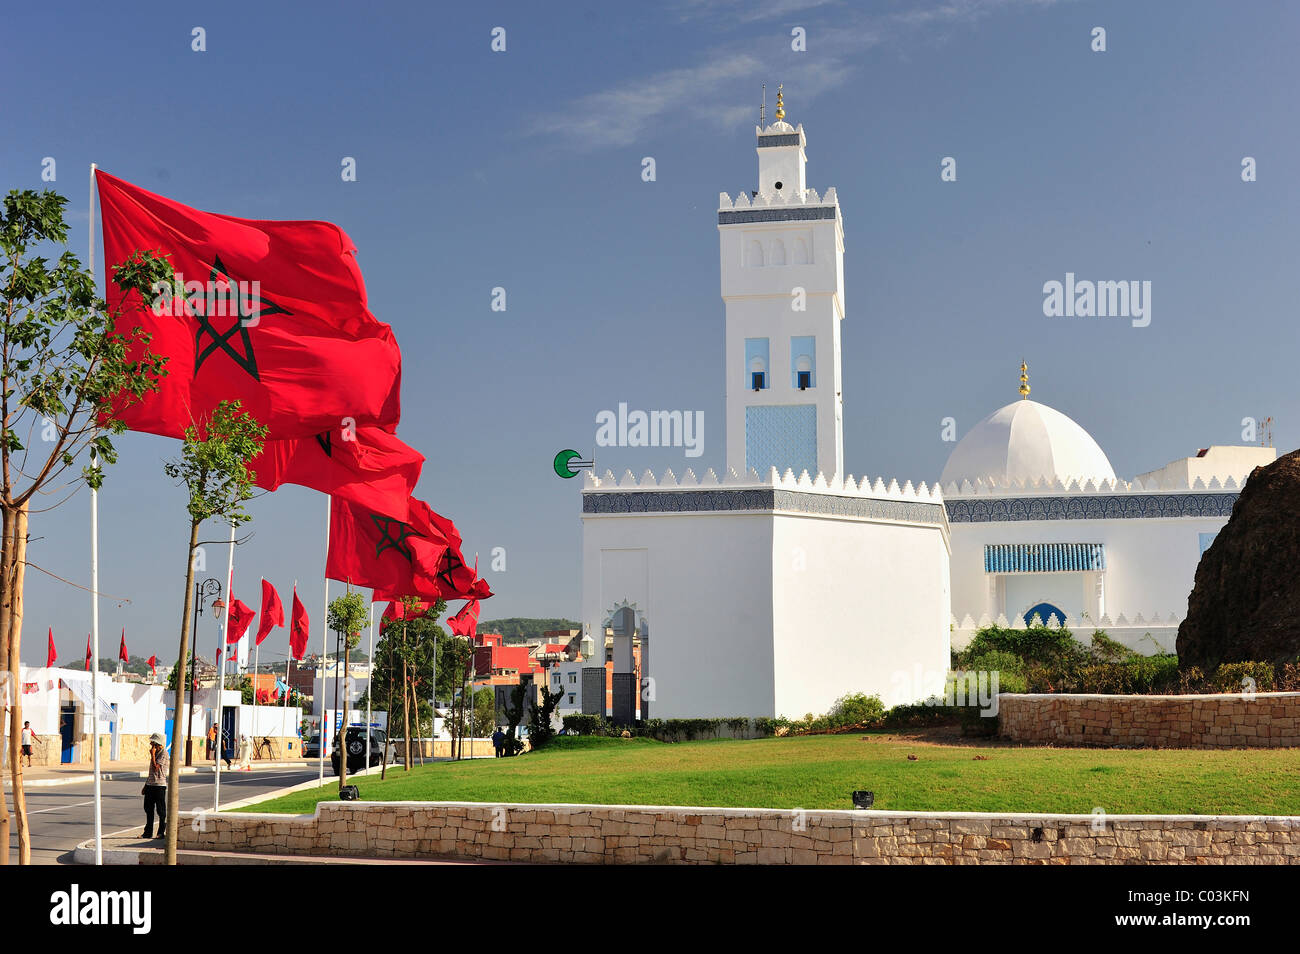 Nationalflaggen des Königreichs Marokko vor einer Moschee, M'diq, Marokko, Afrika Stockfoto